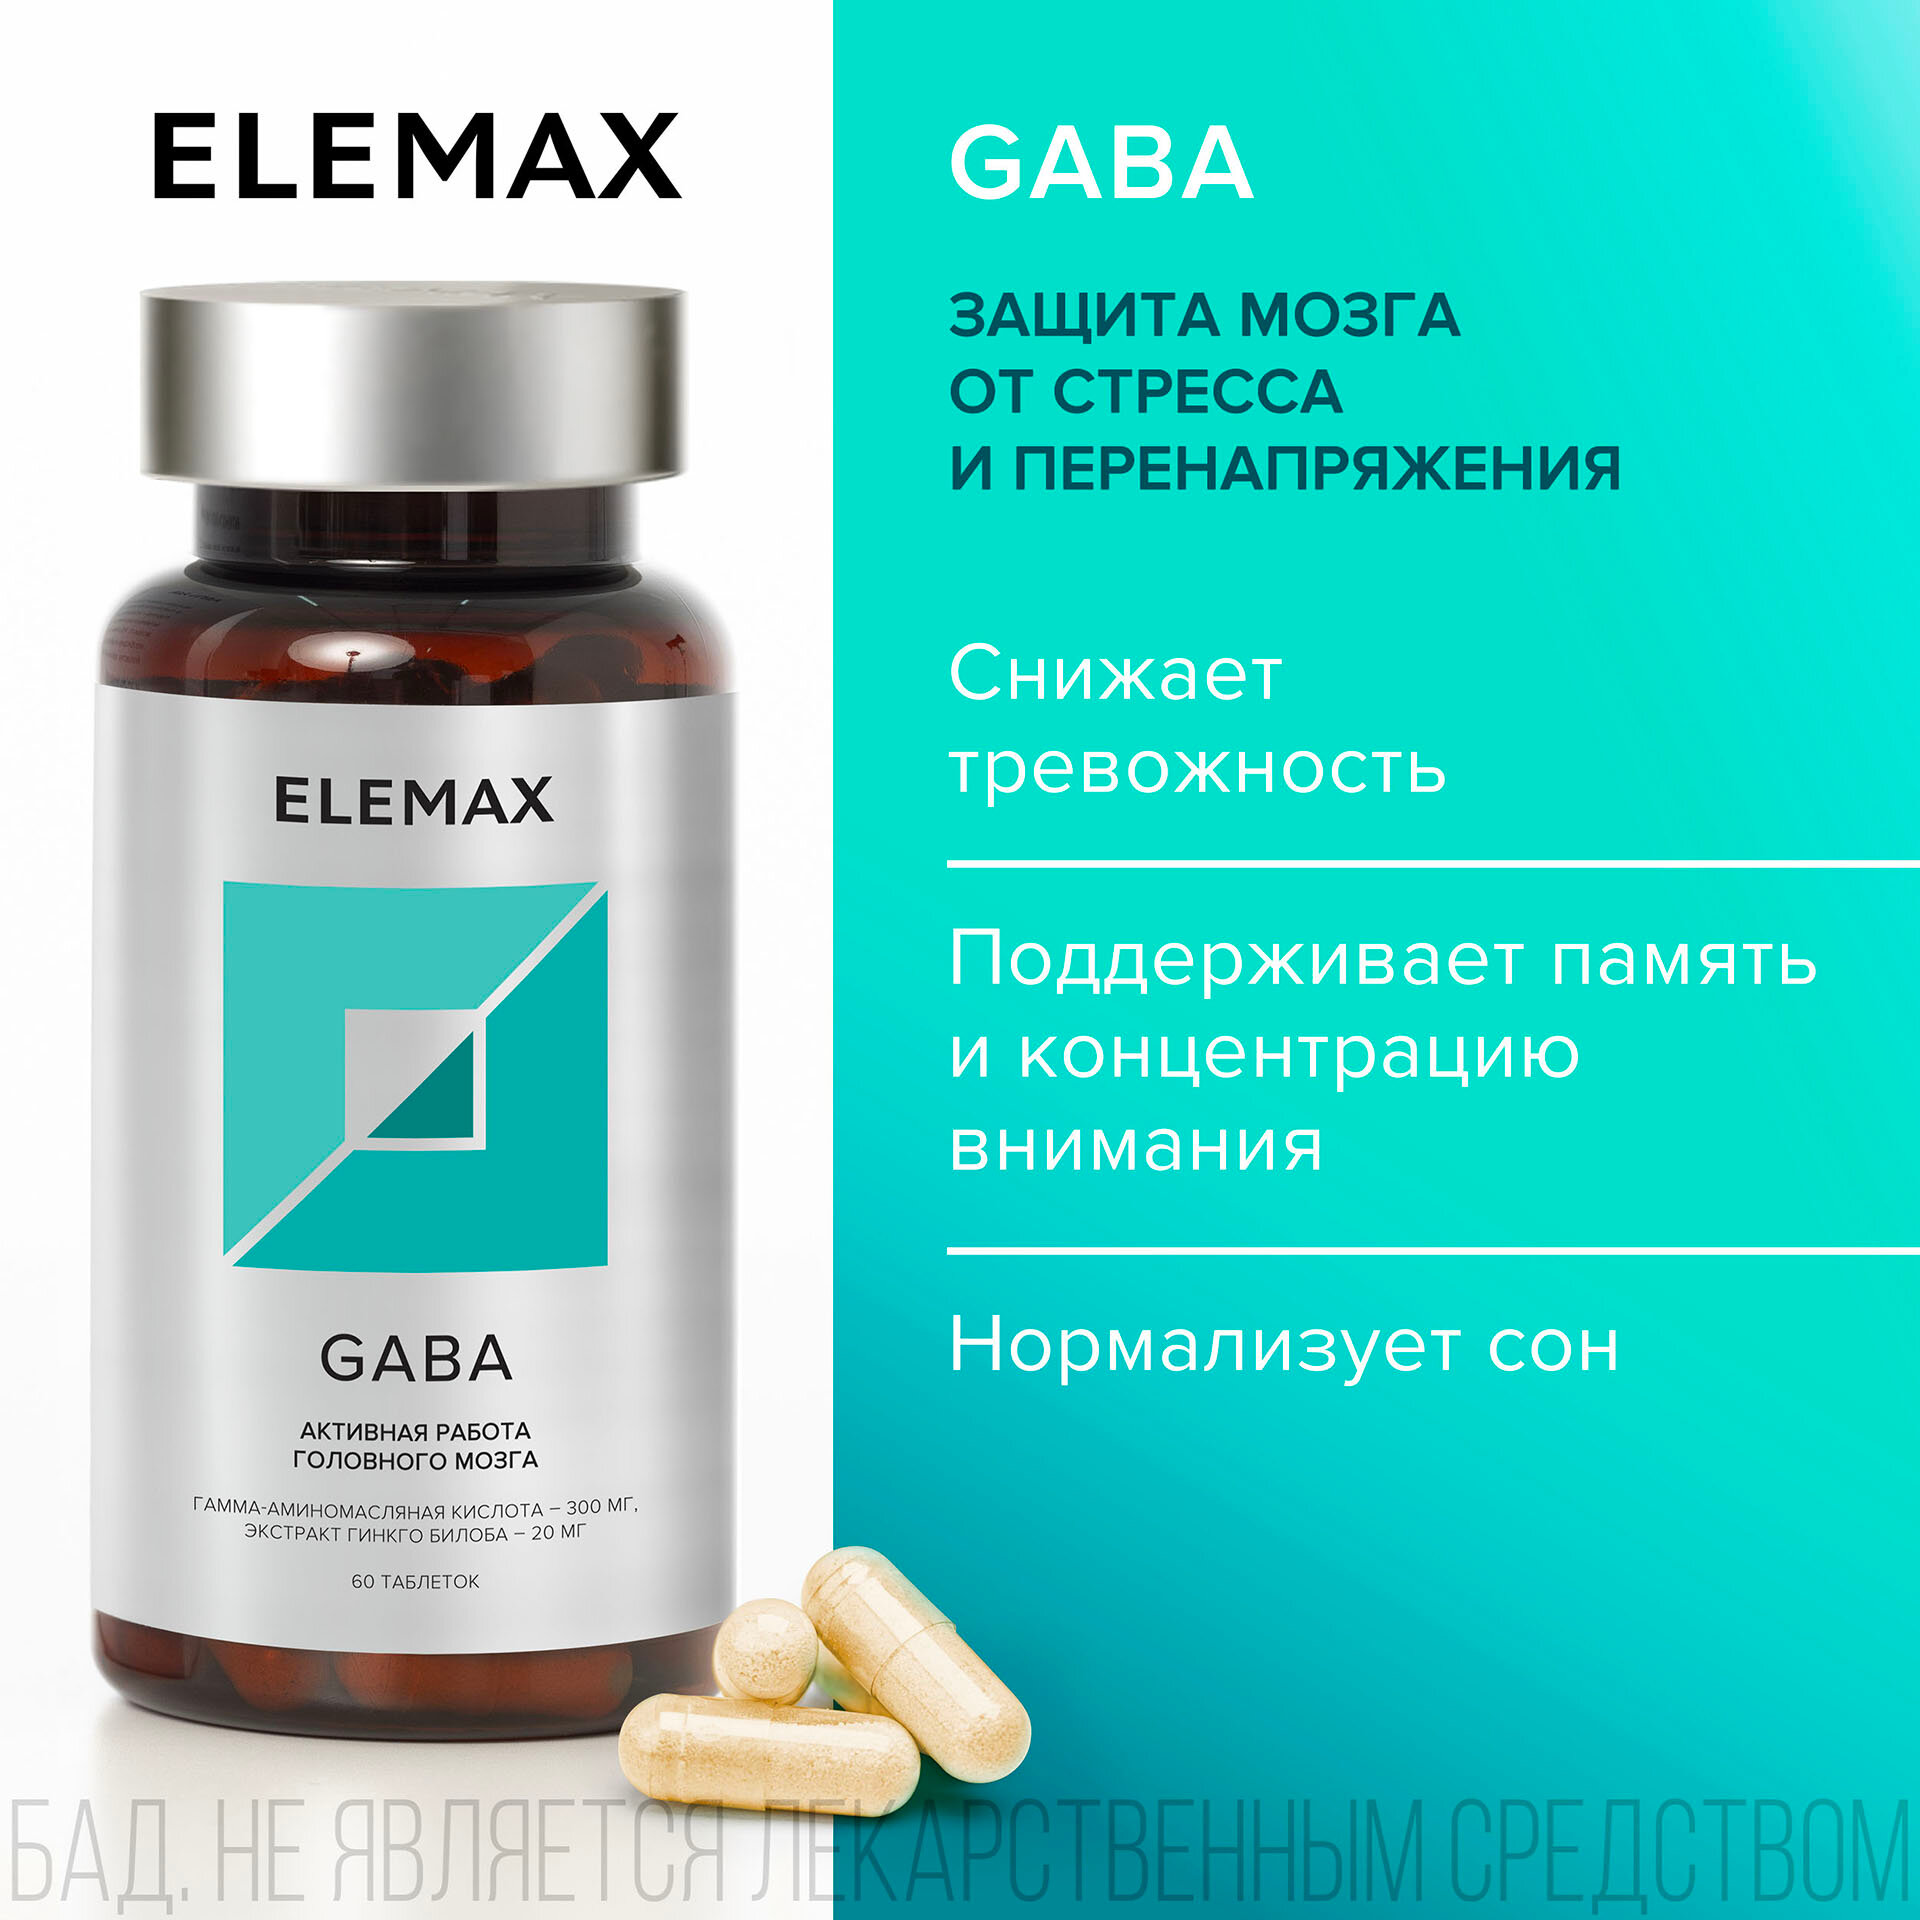 Гамма-аминомасляная кислота + экстракт Гинкго билоба ELEMAX Gaba витамины для защиты мозга от стресса, 60 капсул